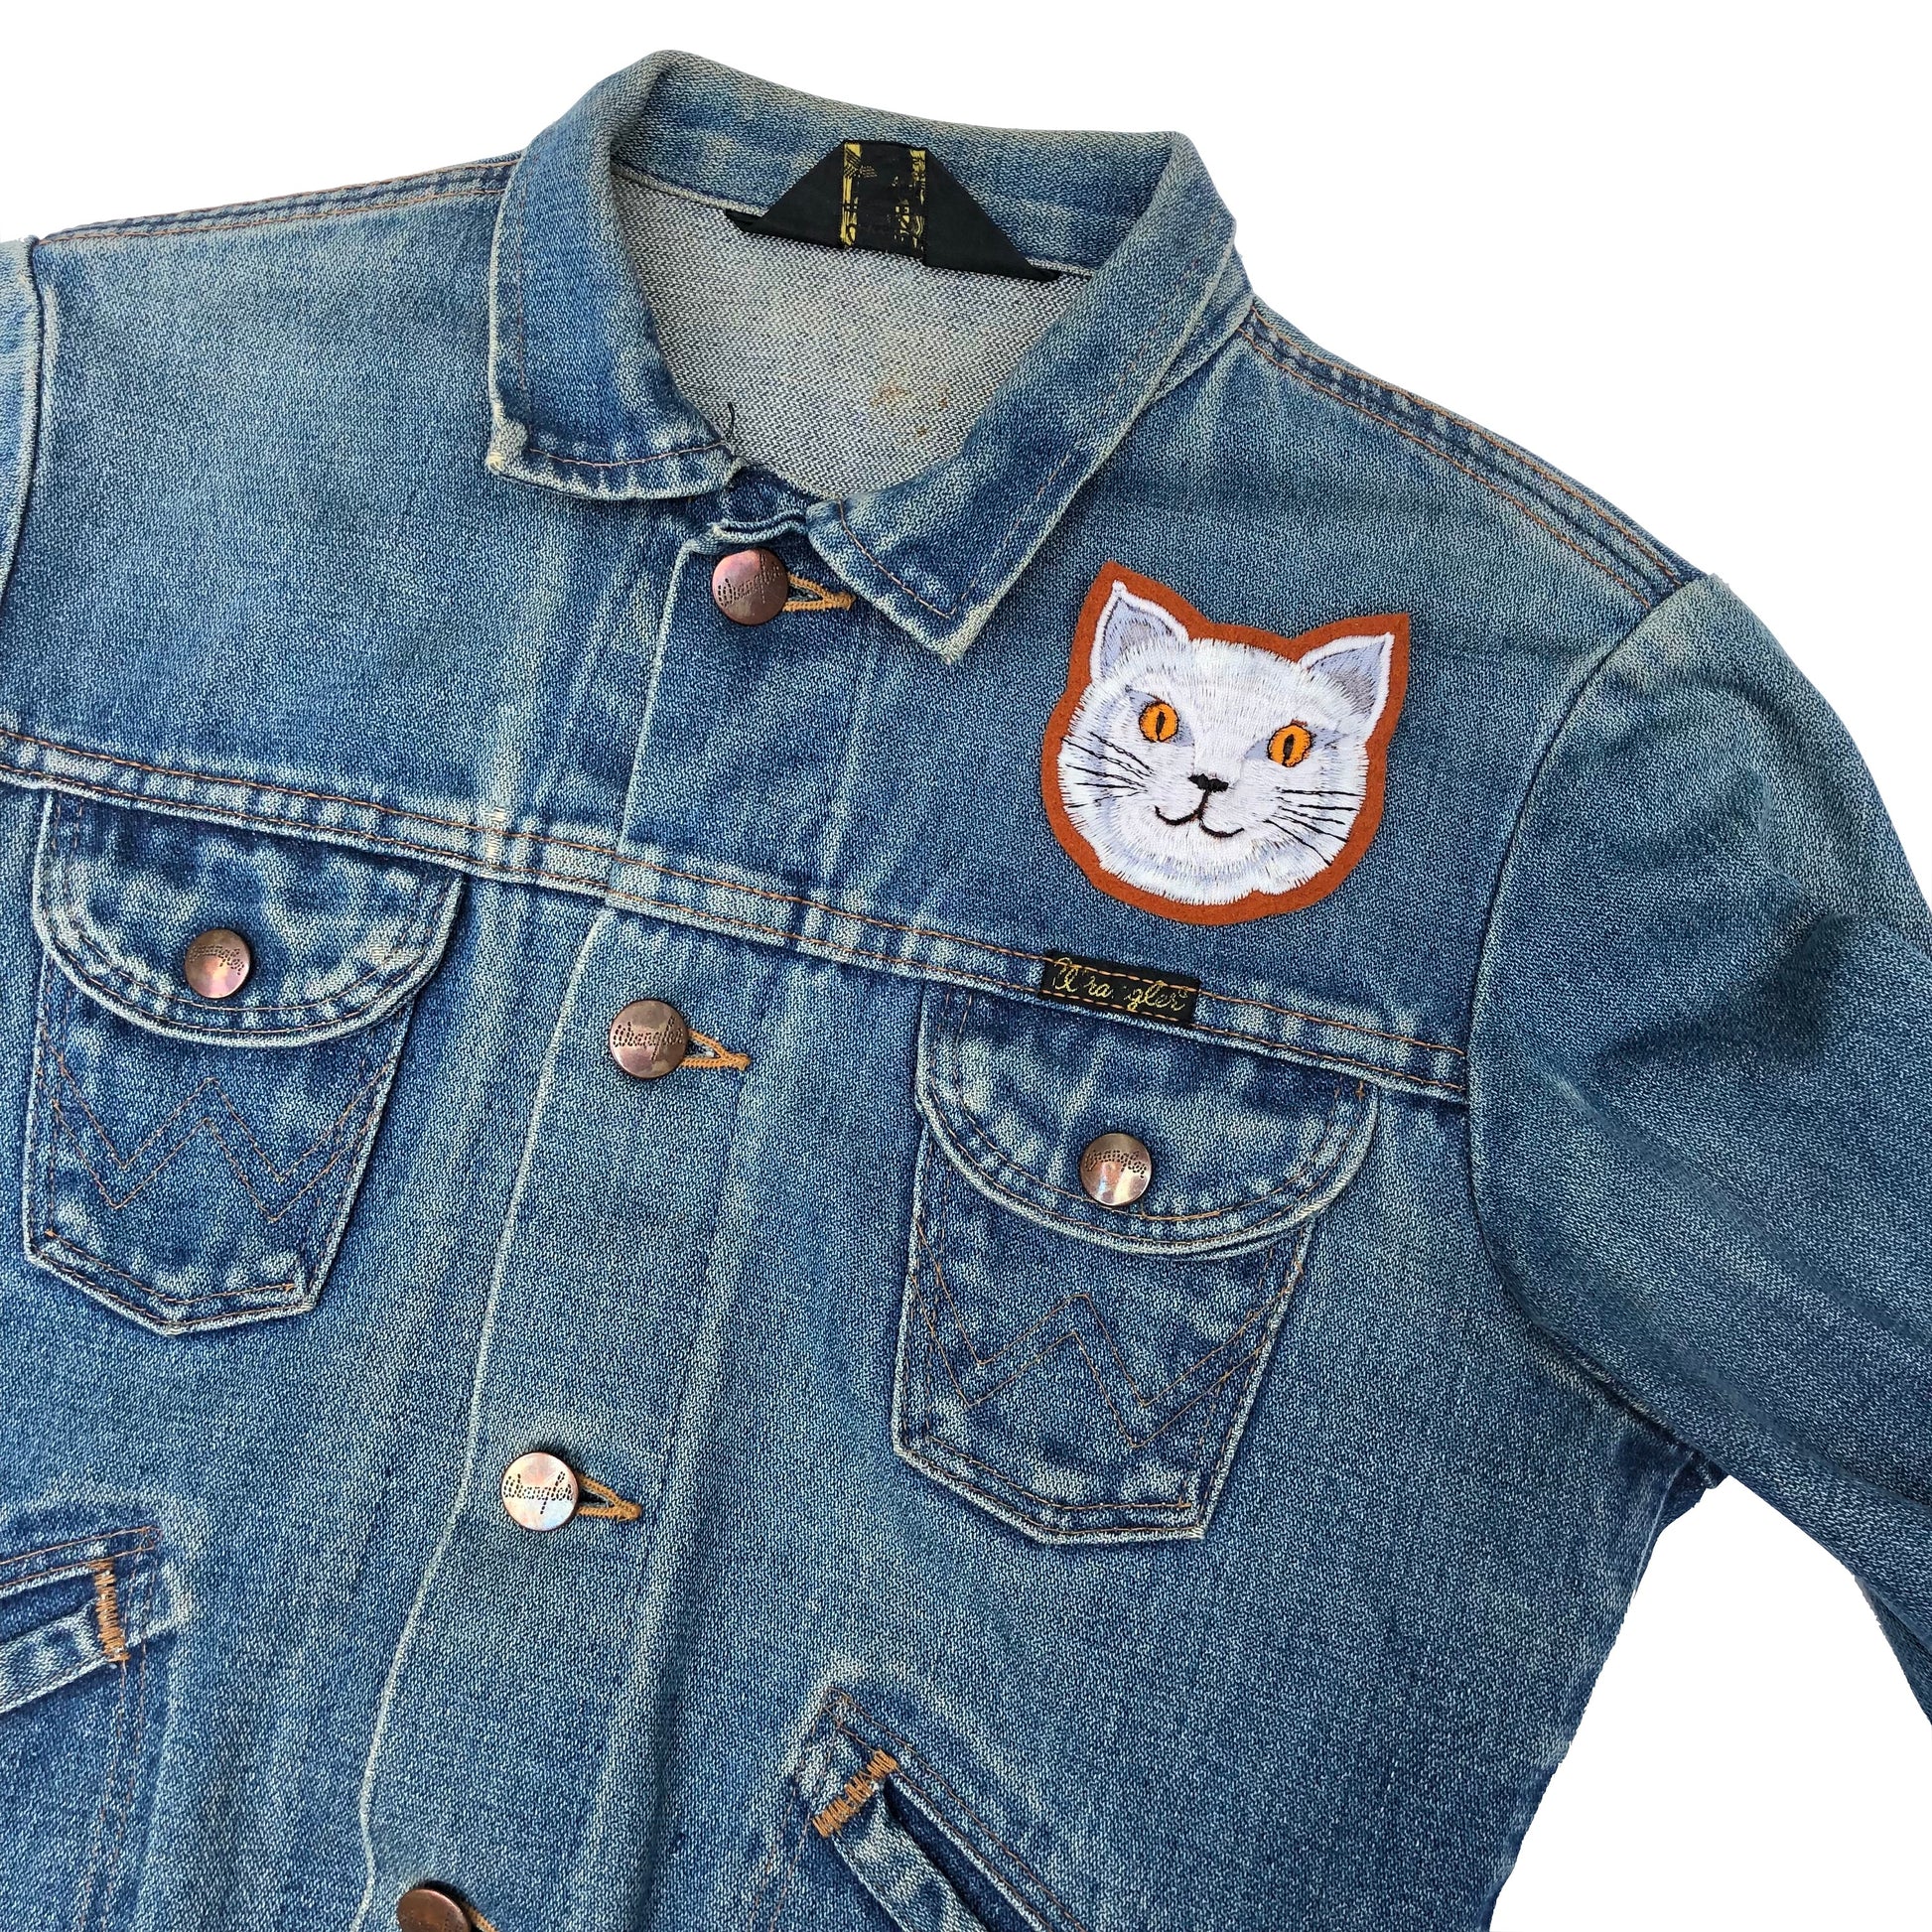 Fat cat embroidered patch on front shoulder of blue denim jacket